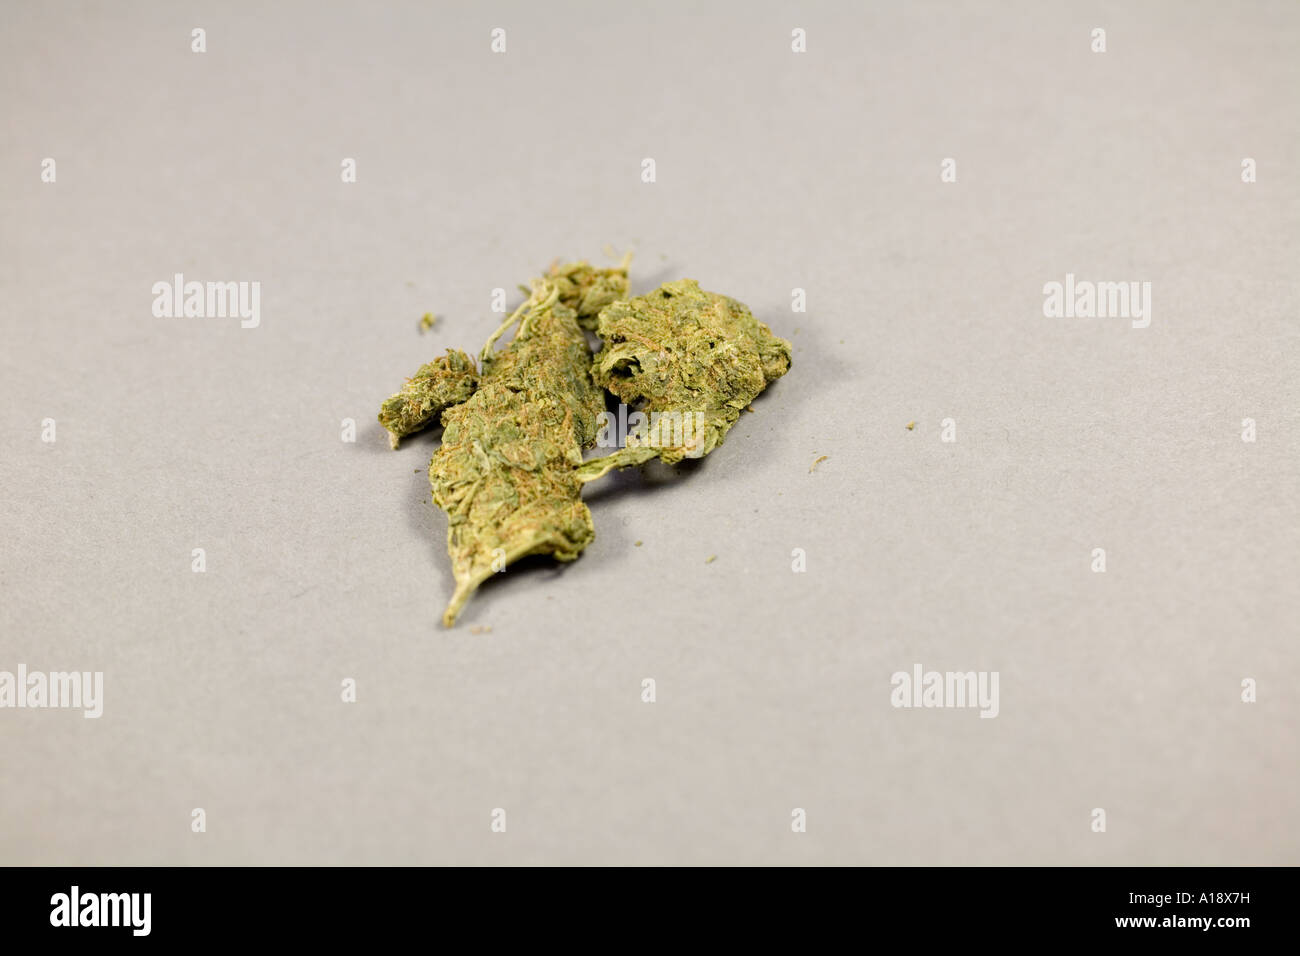 La marijuana trouvés lors de perquisition Banque D'Images